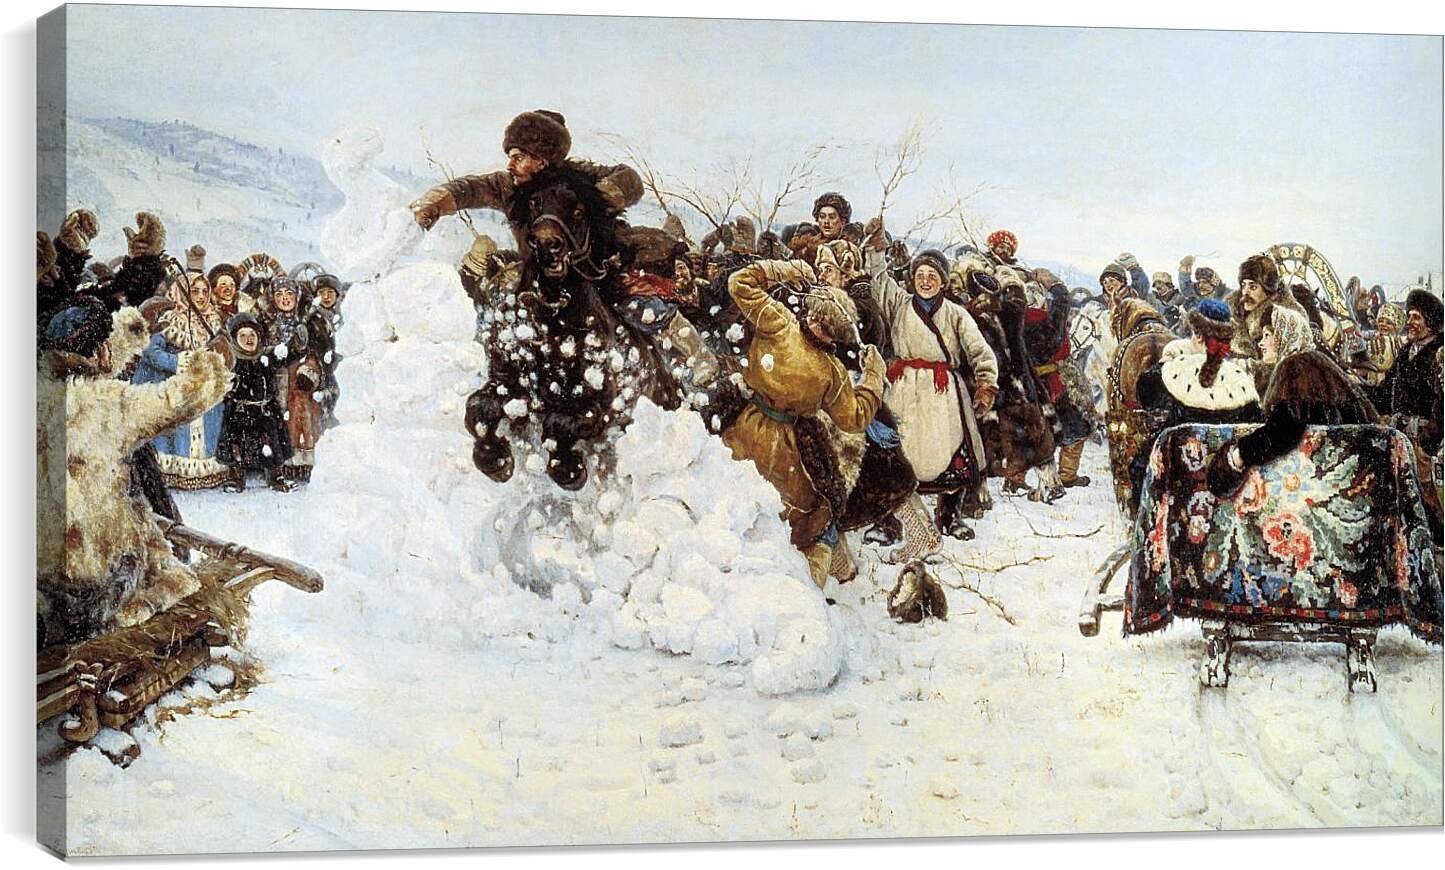 Постер и плакат - Взятие снежного городка. Василий Суриков